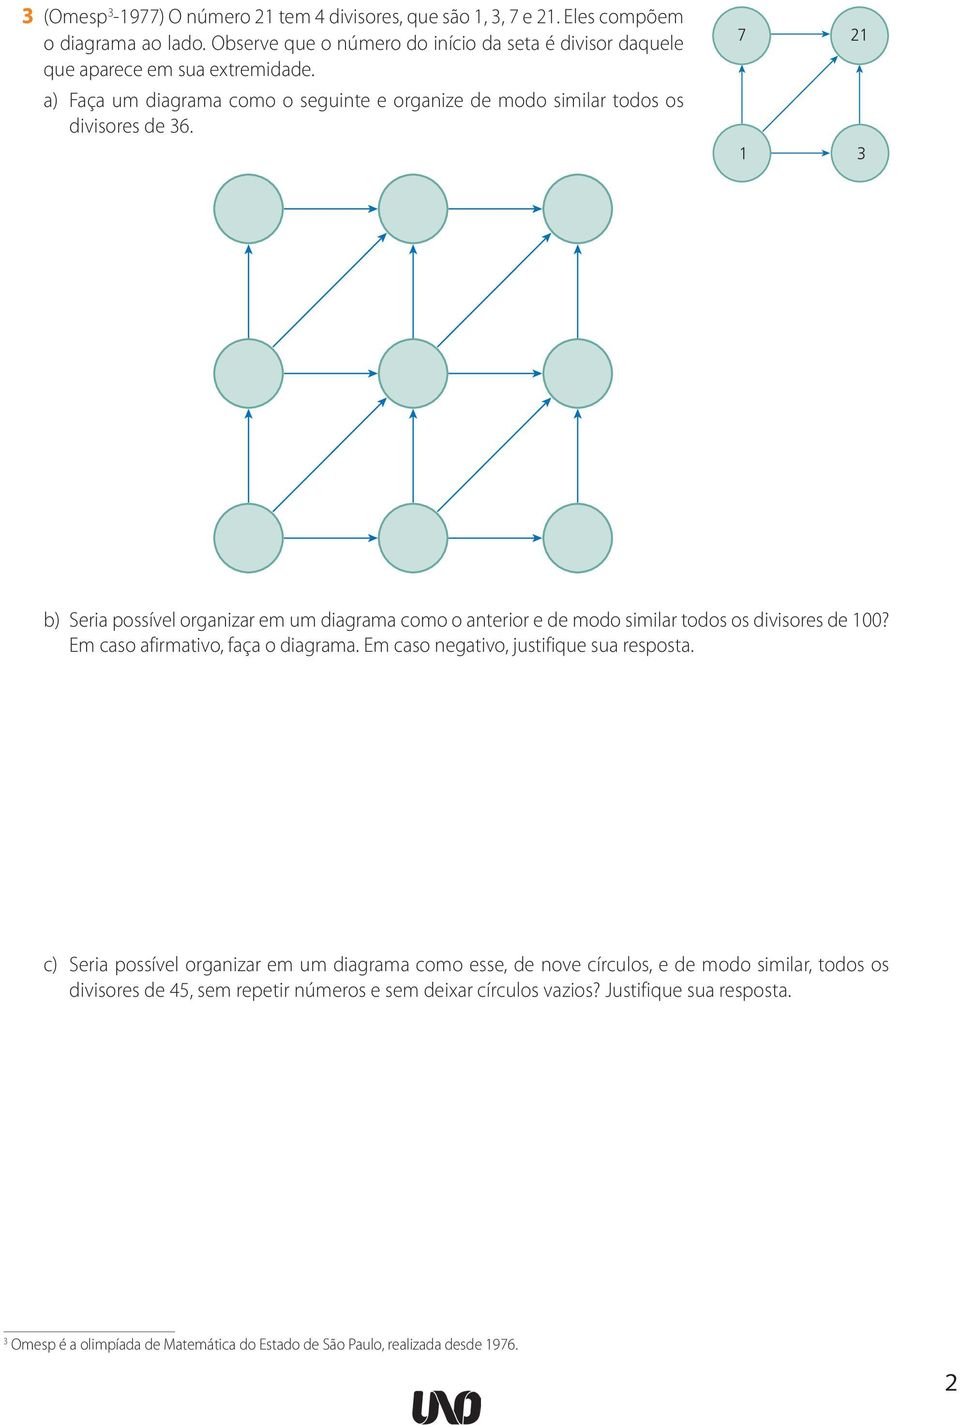 7 21 1 3 b) Seria possível organizar em um diagrama como o anterior e de modo similar todos os divisores de 100? Em caso afirmativo, faça o diagrama.